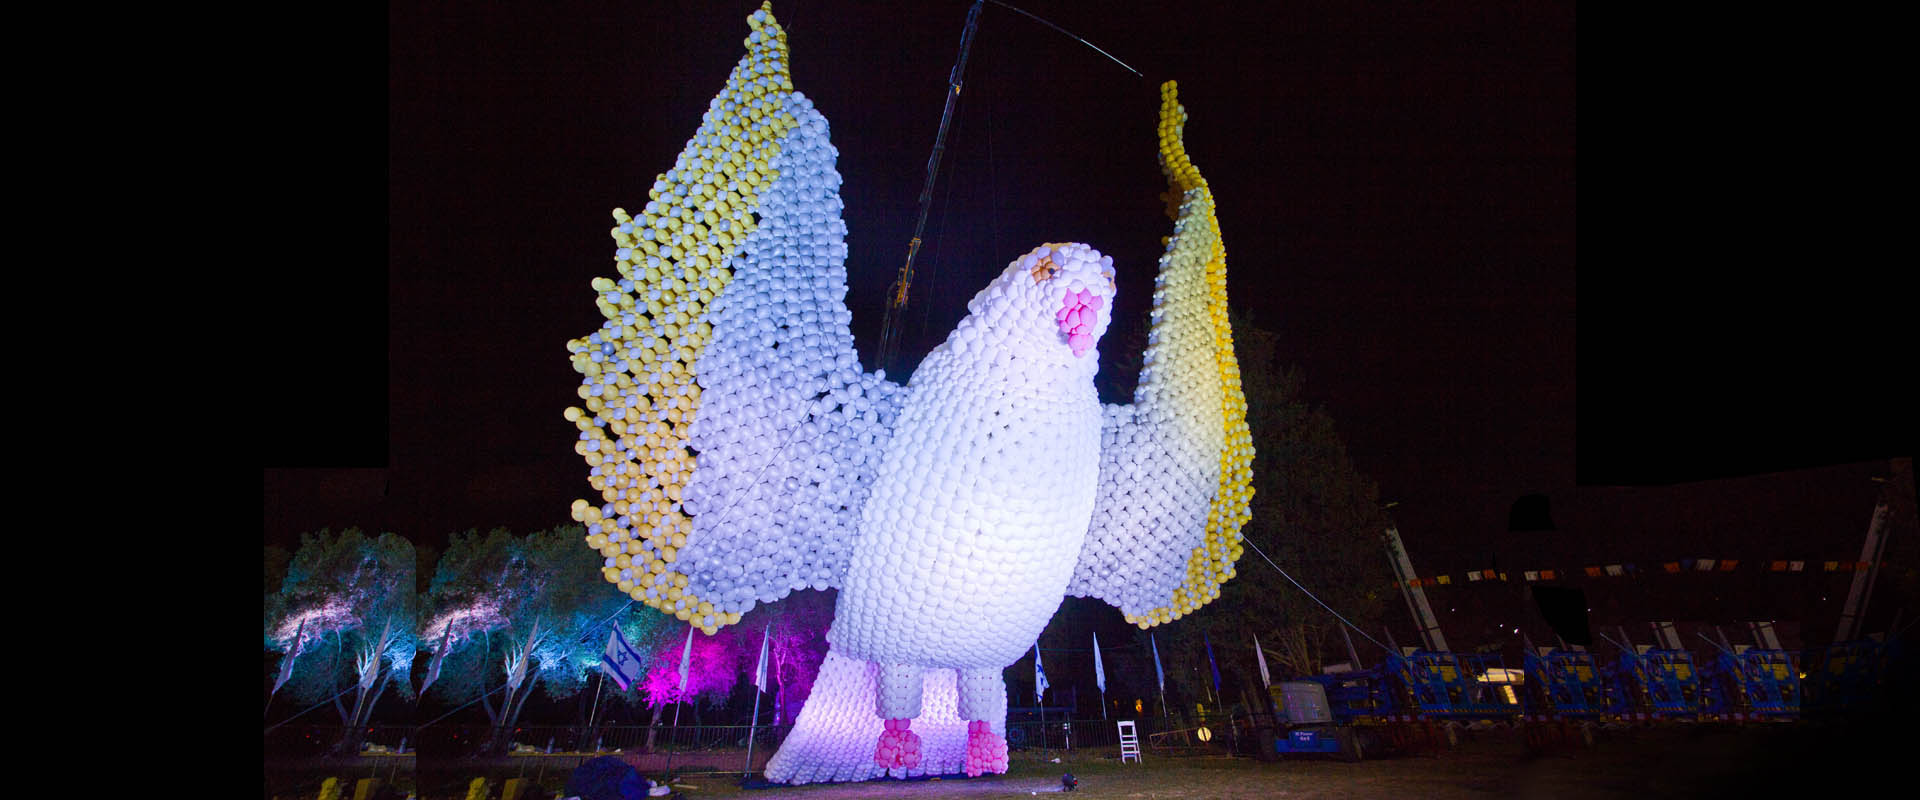 יונה ענקית מבלונים בפסטיבל הפיסול במעלות